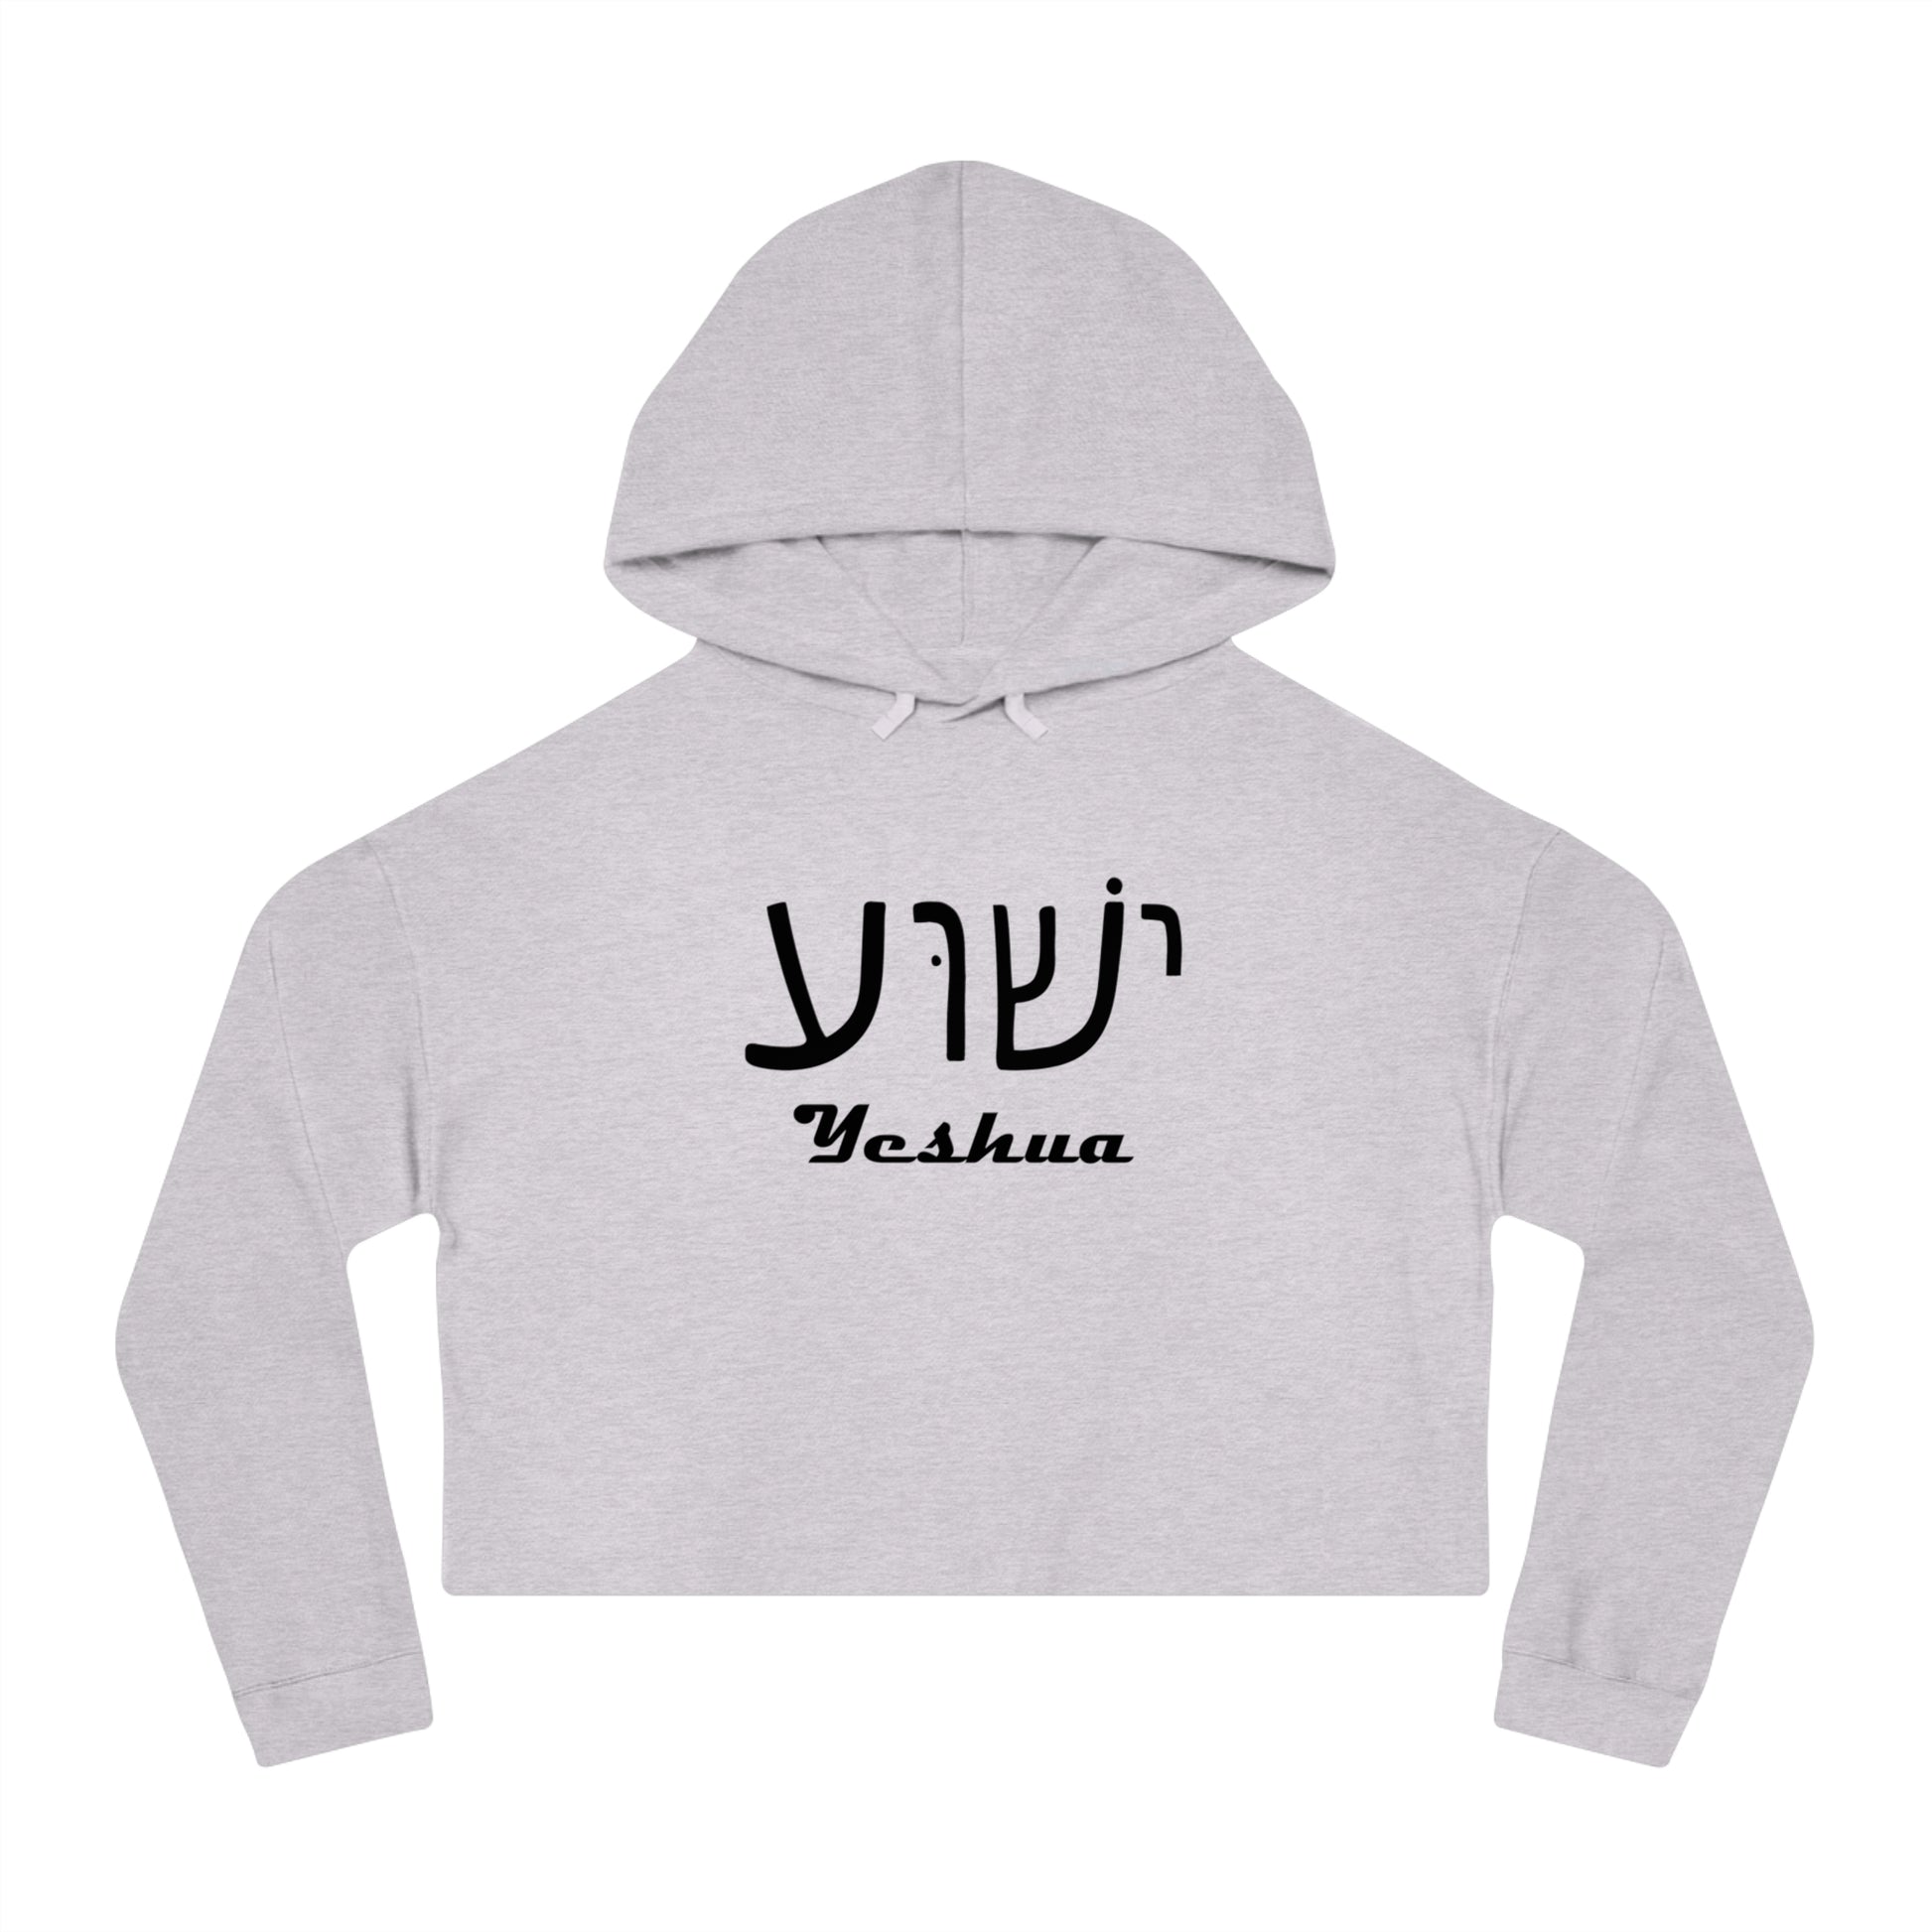 Yeshua Hooded Sweatshirt Women’s 2